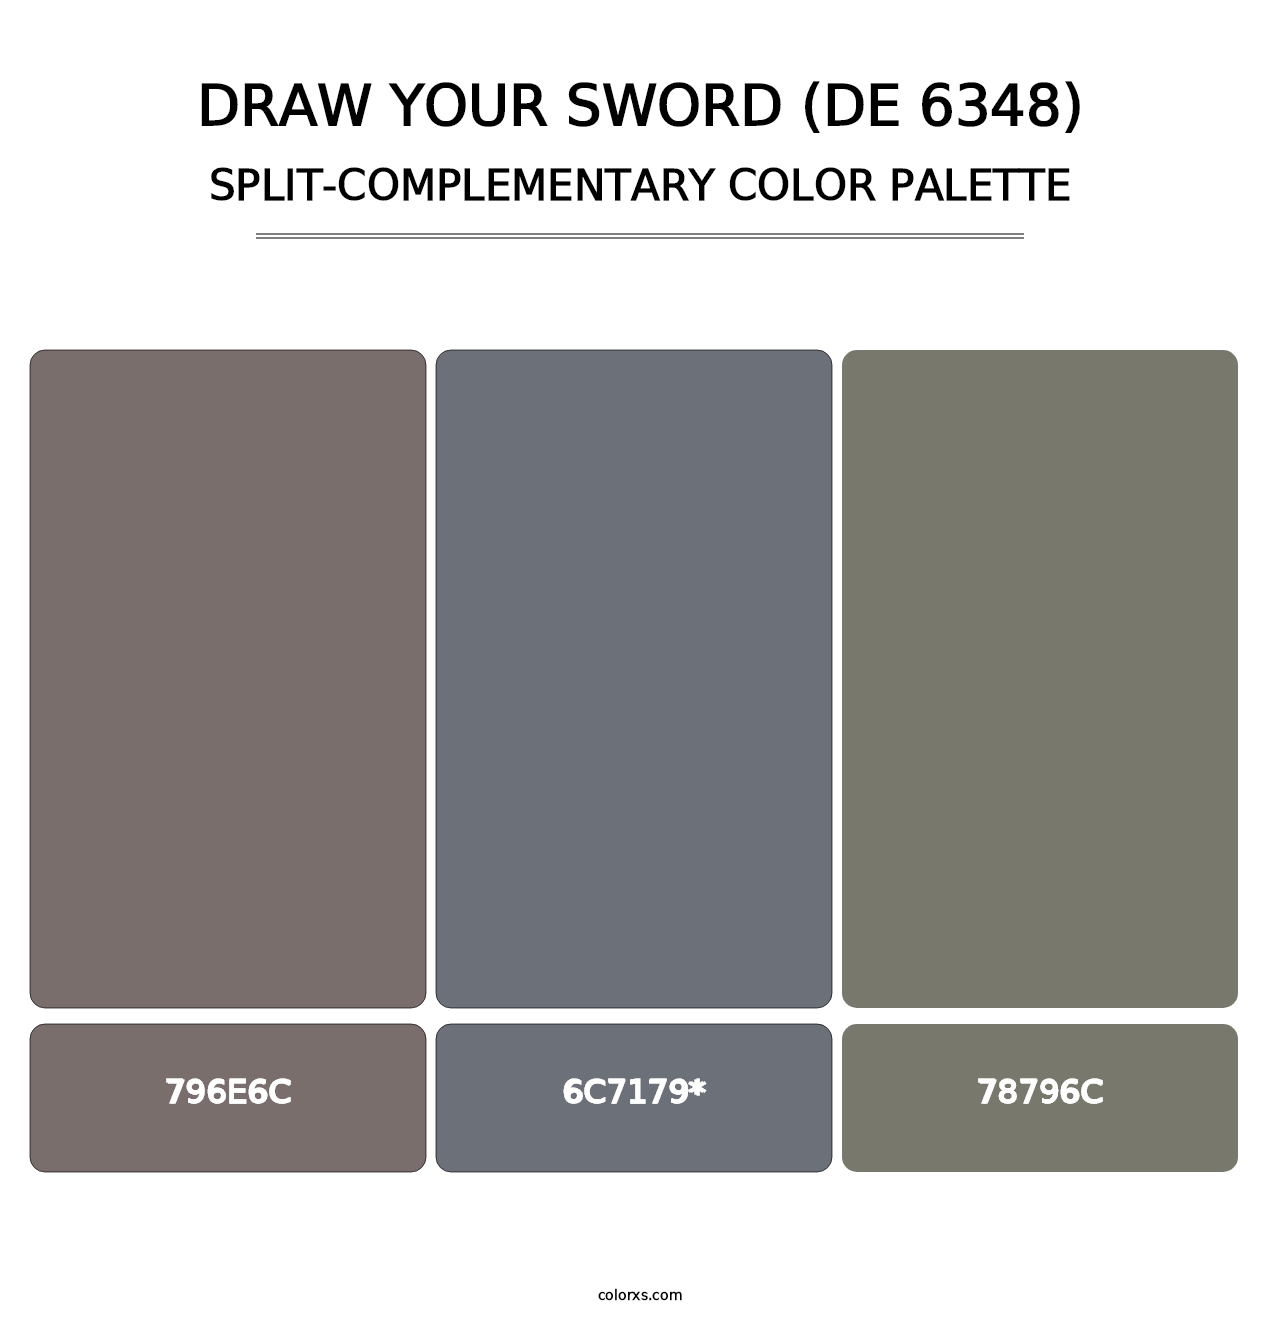 Draw Your Sword (DE 6348) - Split-Complementary Color Palette